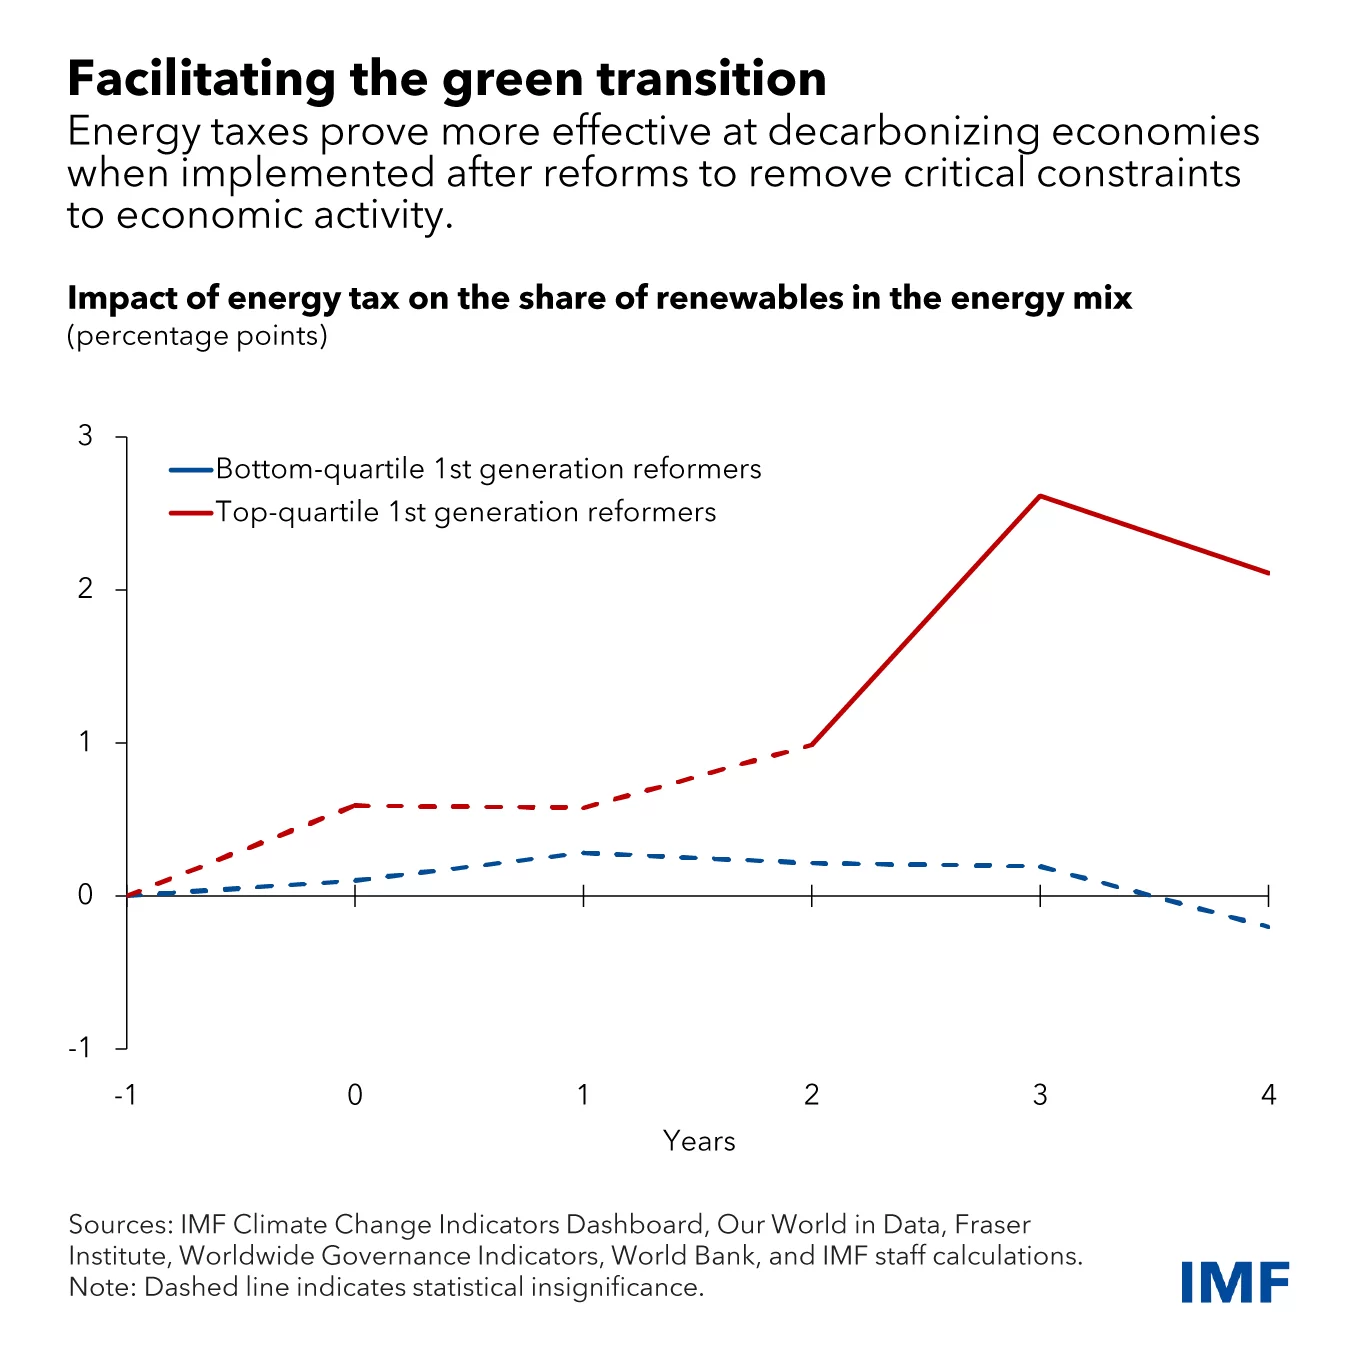 Impostos sobre energia são mais eficazes na descarbonização de economias quando implementados após reformas para remover restrições à atividade econômica